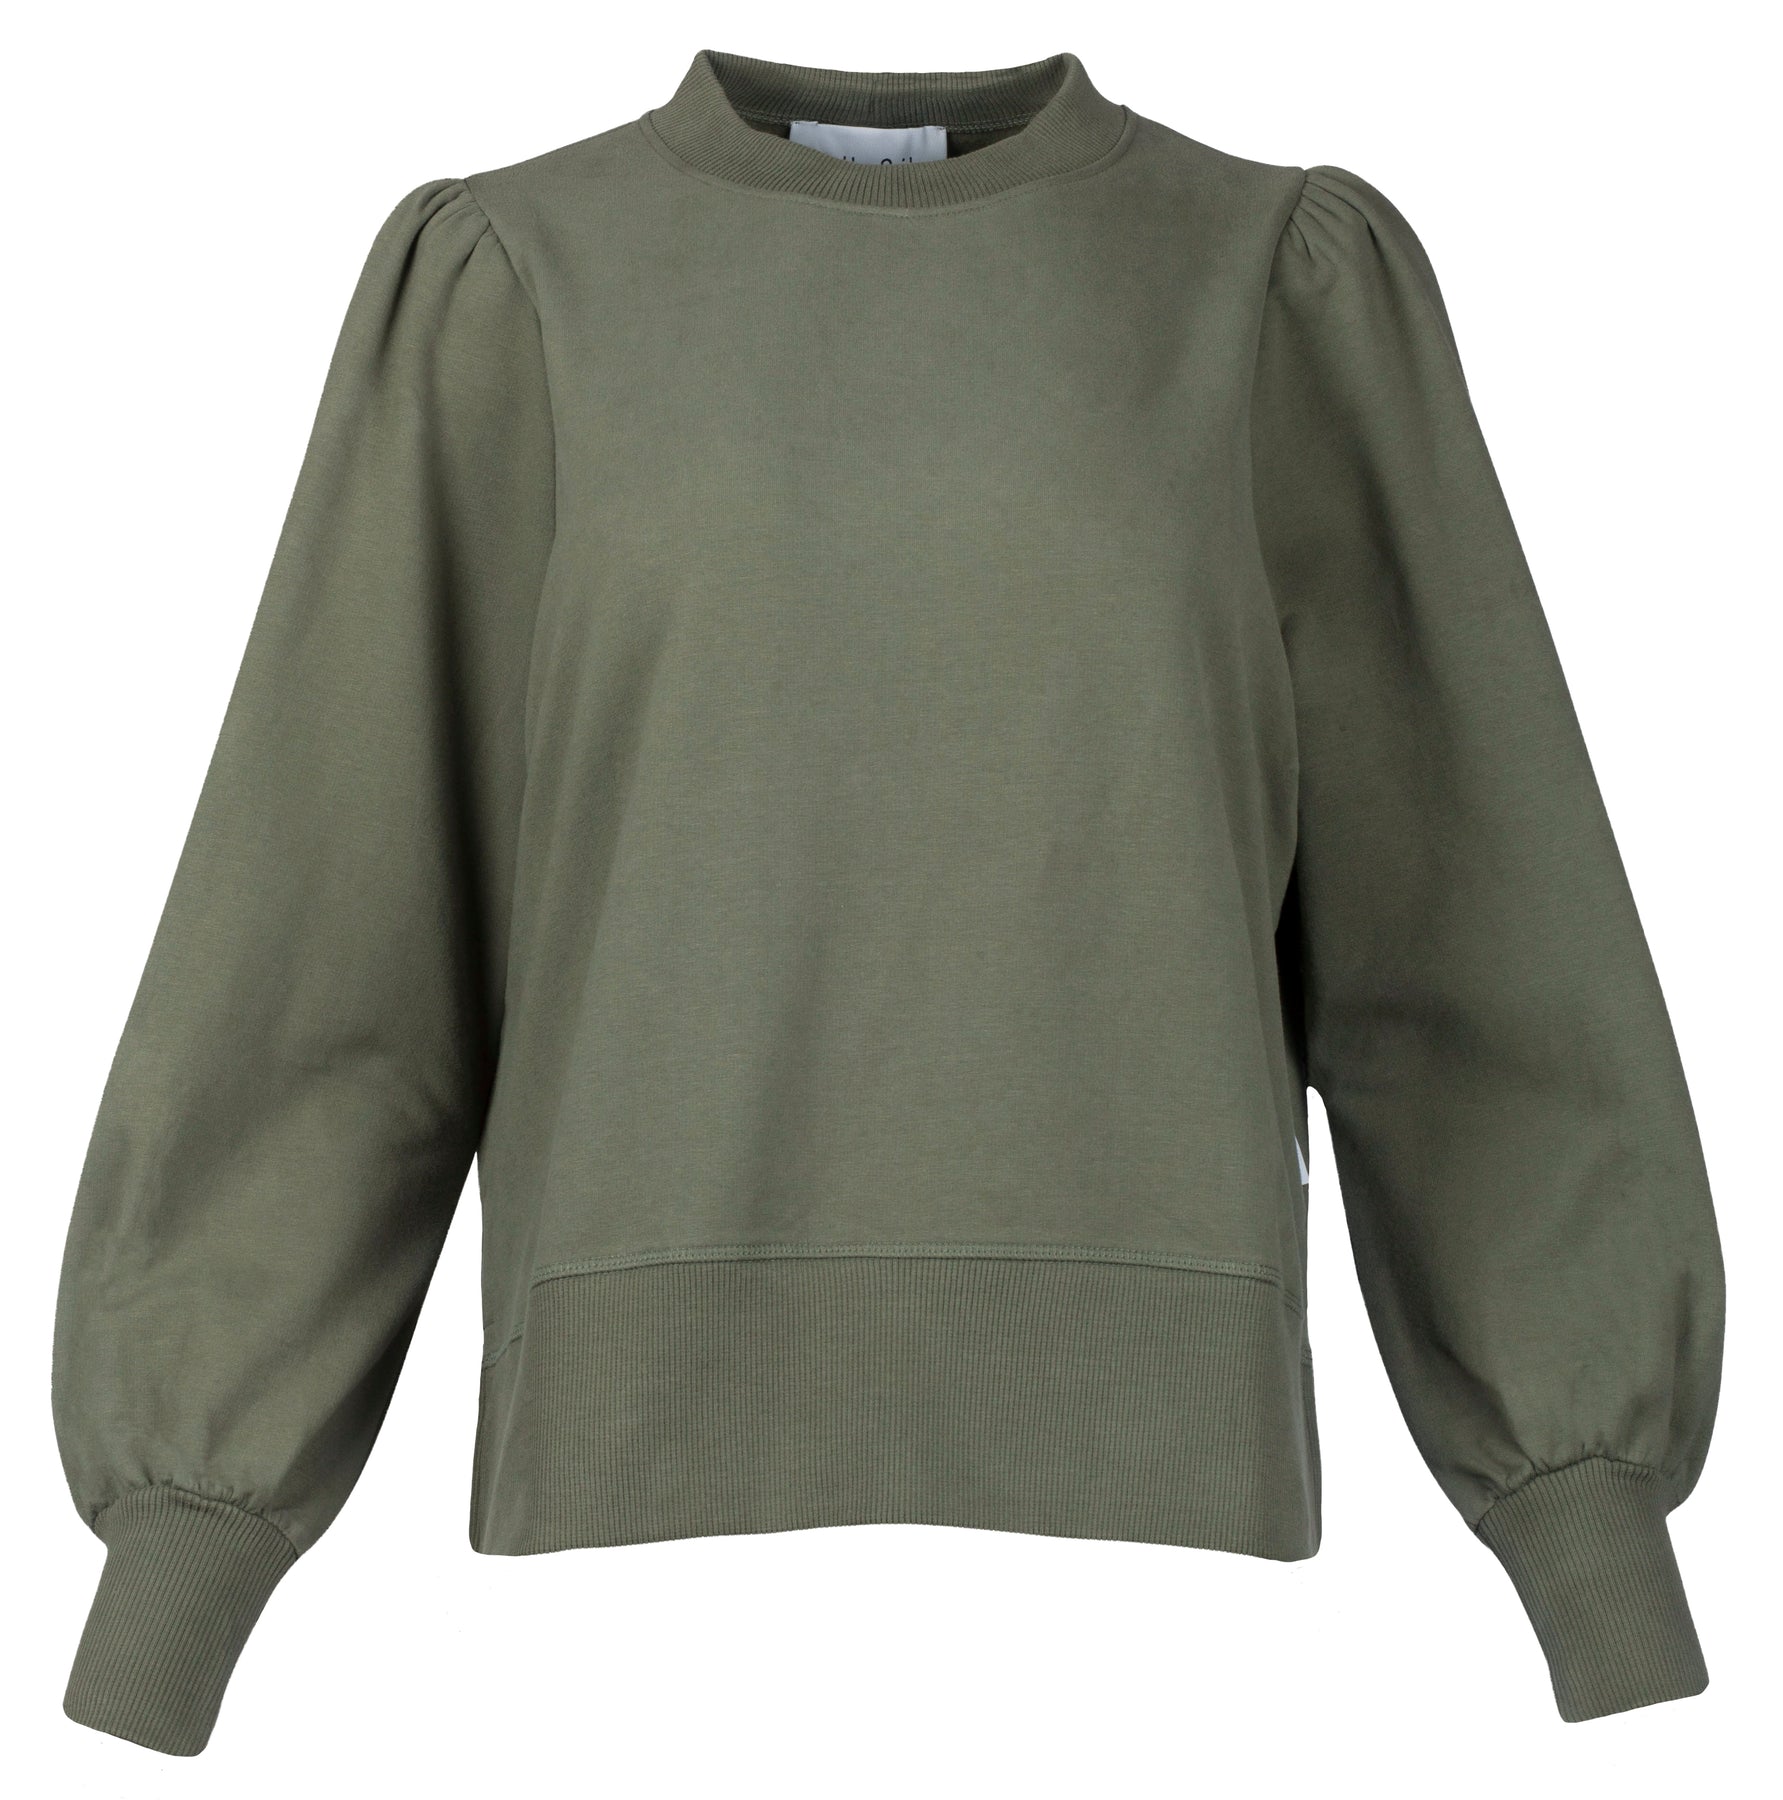 Sarena Sweater - Army Green - Ella & il - Gensere - VILLOID.no